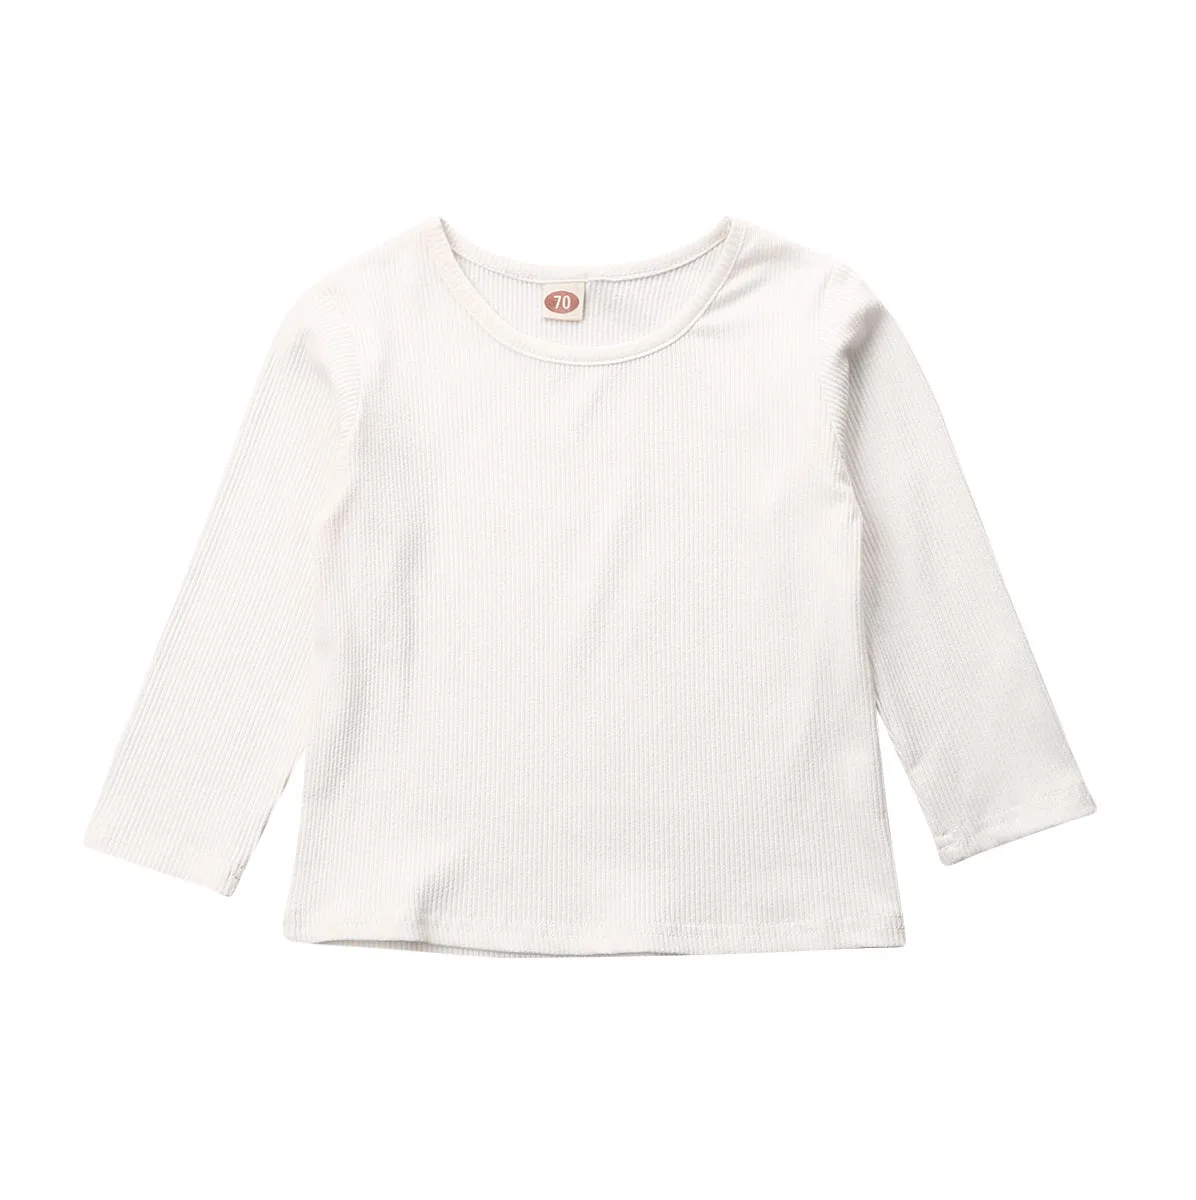 Прямая поставка, одежда ярких цветов для маленьких мальчиков и девочек топы с длинными рукавами, пуловер Джемперы и толстовки милые теплые хлопковые для детей от 0 до 18 месяцев - Цвет: Белый